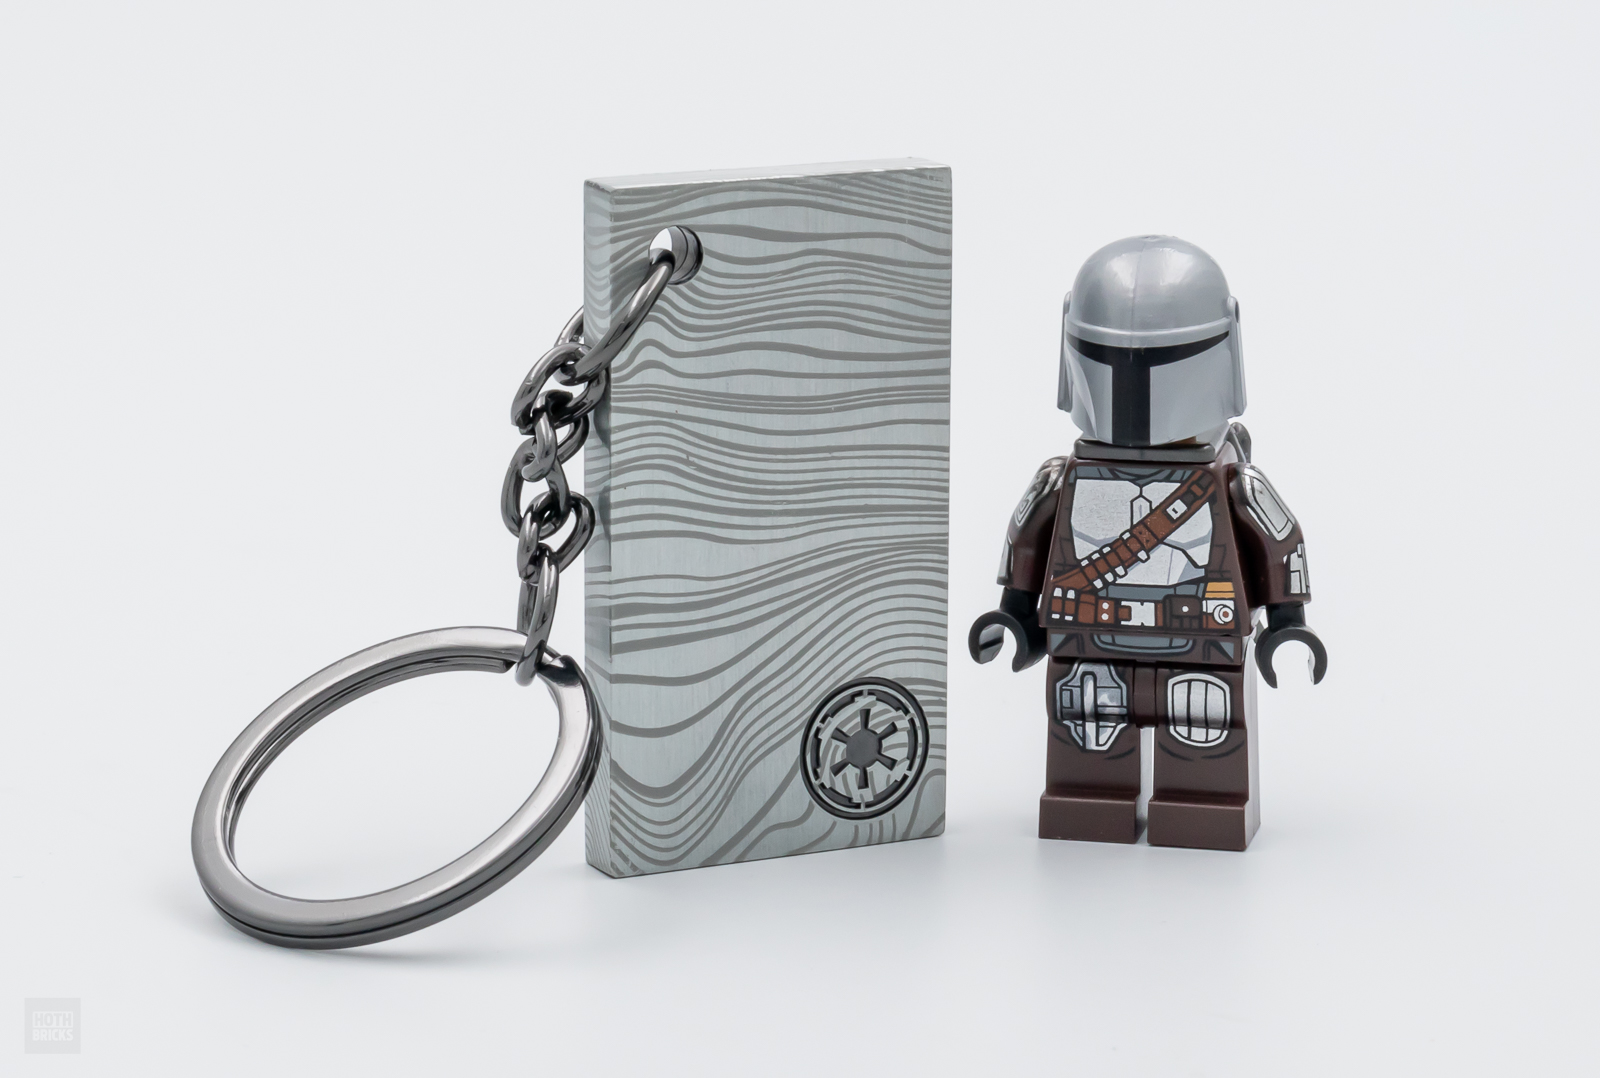 LEGO Porte-clés Conserve tes clés en sécurité grâce à Un Support pour  Porte-clés coloré : : Jeux et Jouets